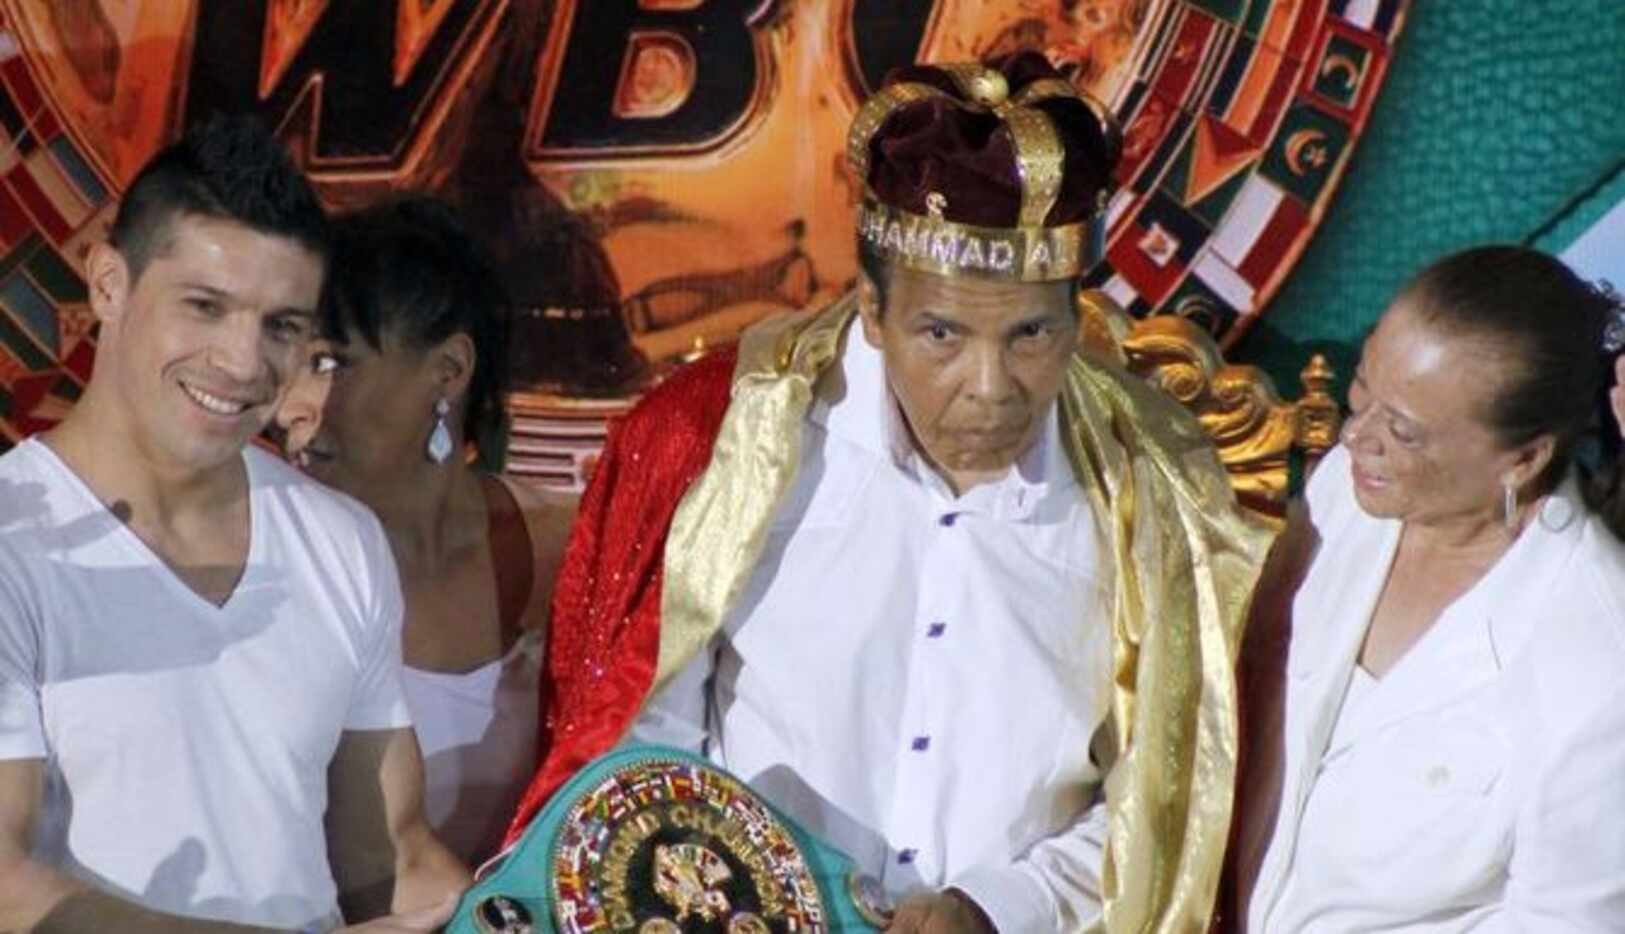 El ex campeón mundial de peso pesado Muhammad Ali (centro) en un evento en Cancún en...